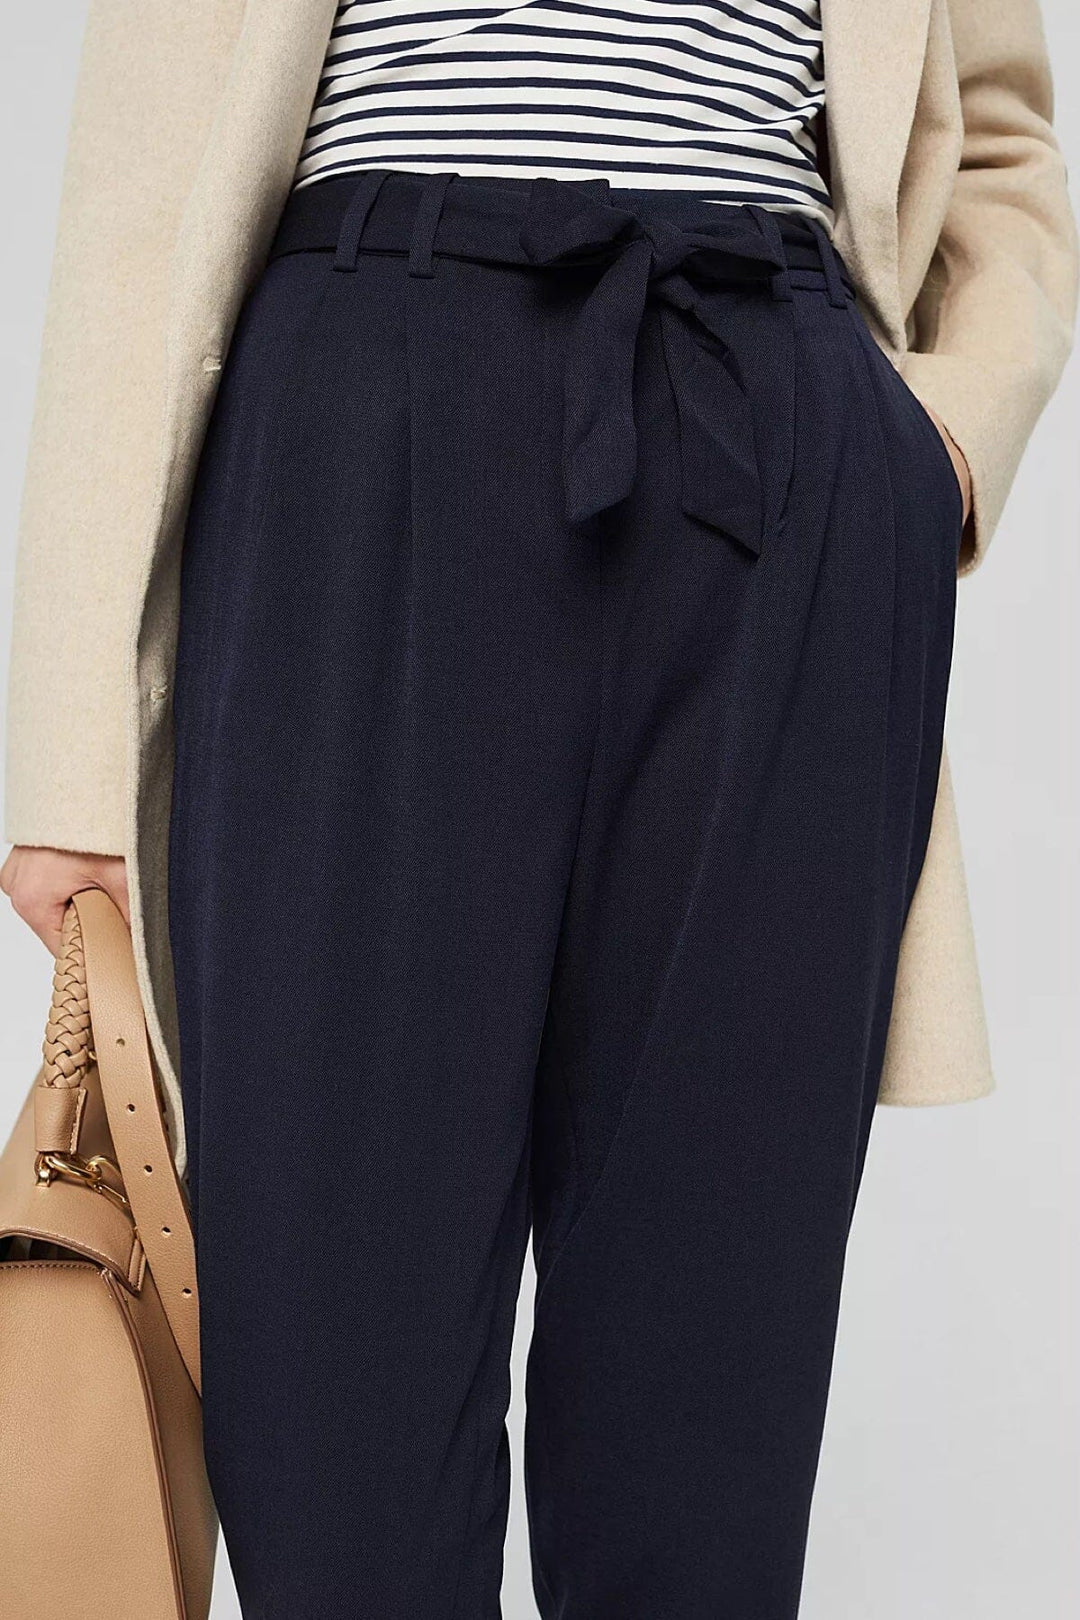 Pantalon avec une boucle à la taille Femme - Bas - Pantalon - Pantalon habillé Esprit